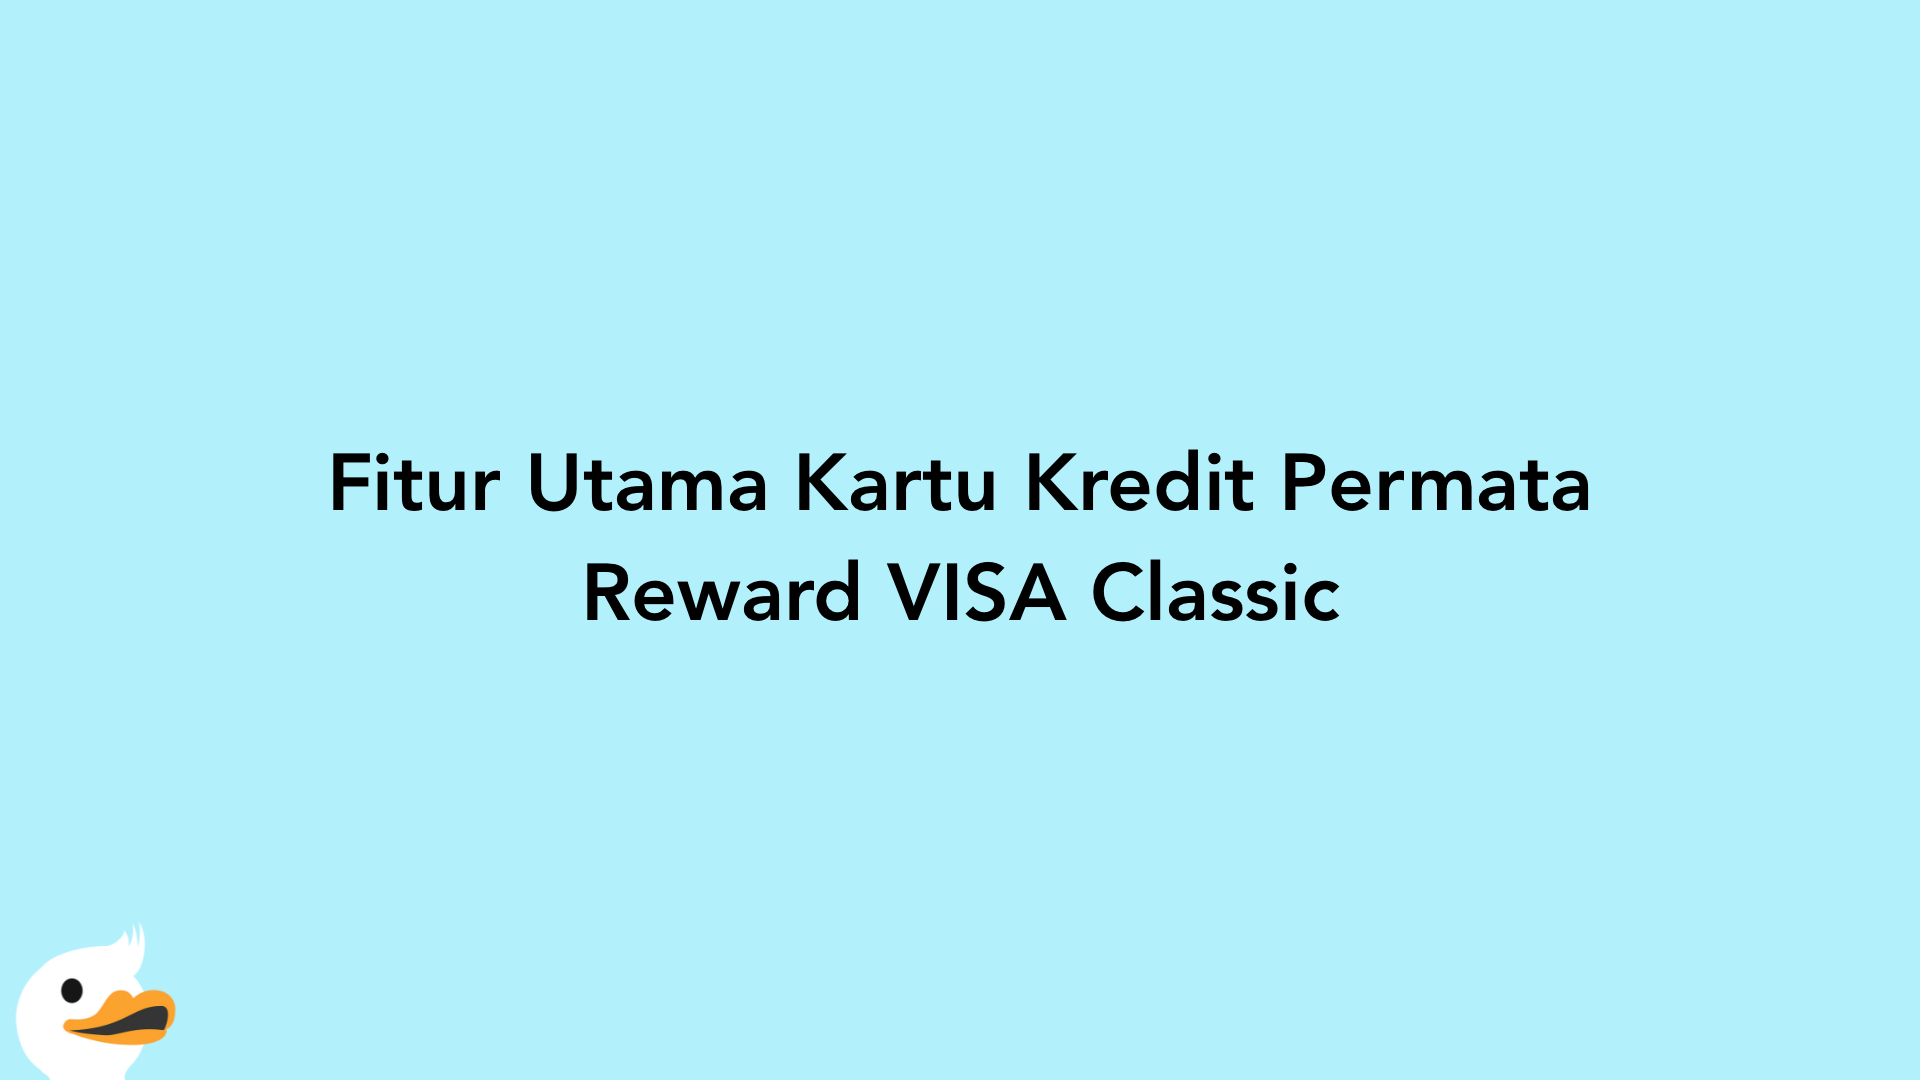 Fitur Utama Kartu Kredit Permata Reward VISA Classic